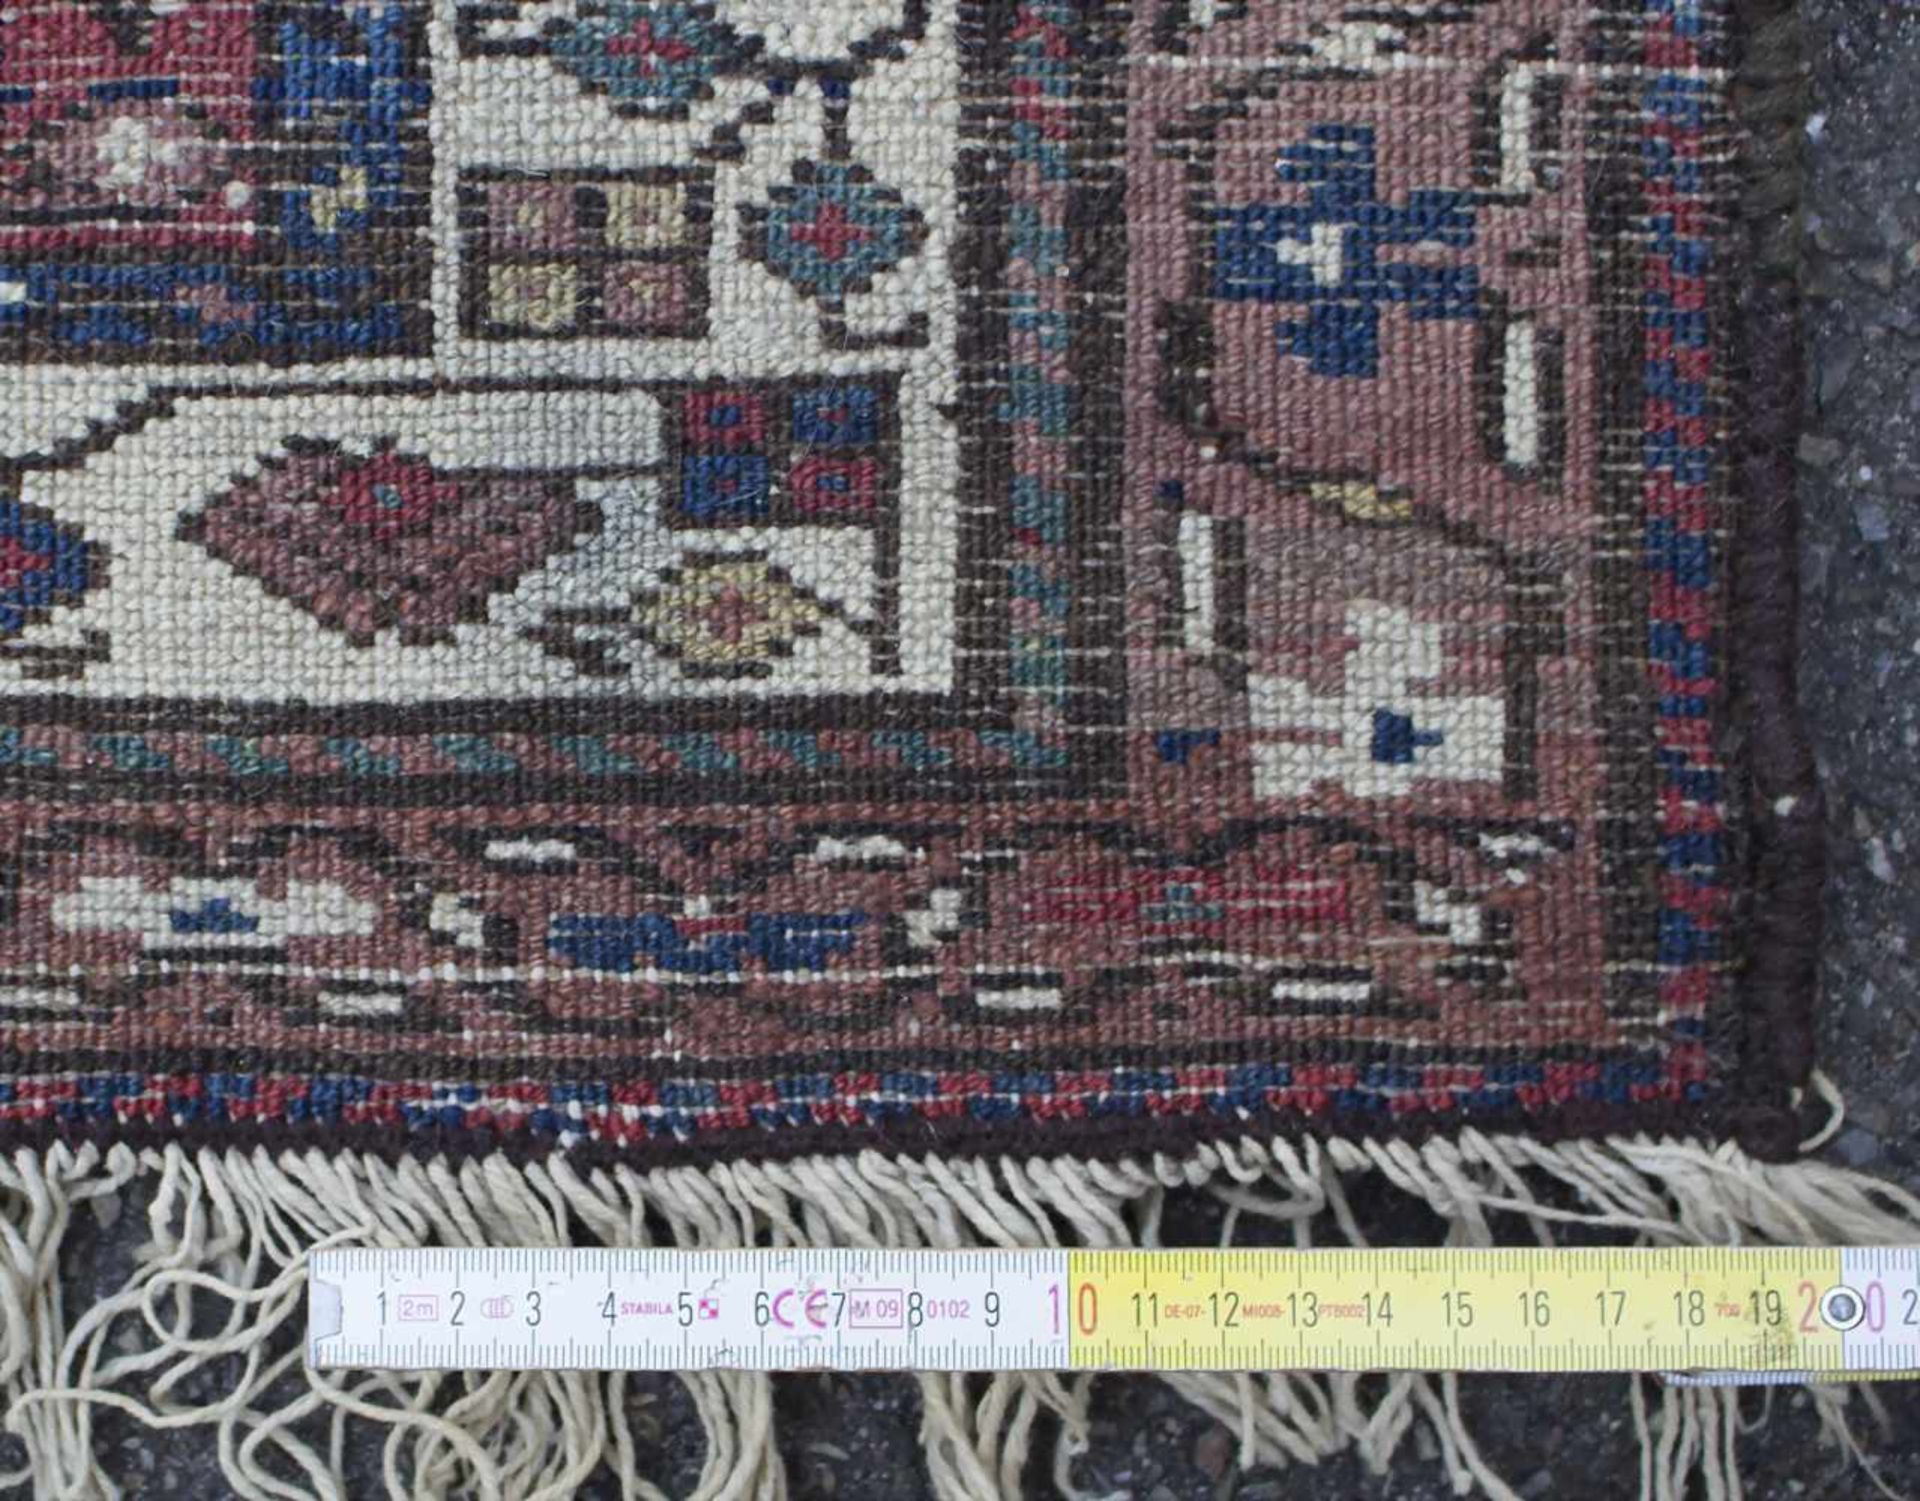 Orientteppich 'Hamadan' / An oriental carpet 'Hamadan'Material: Wolle auf Baumwolle, Maße: 112,5 x - Bild 2 aus 4